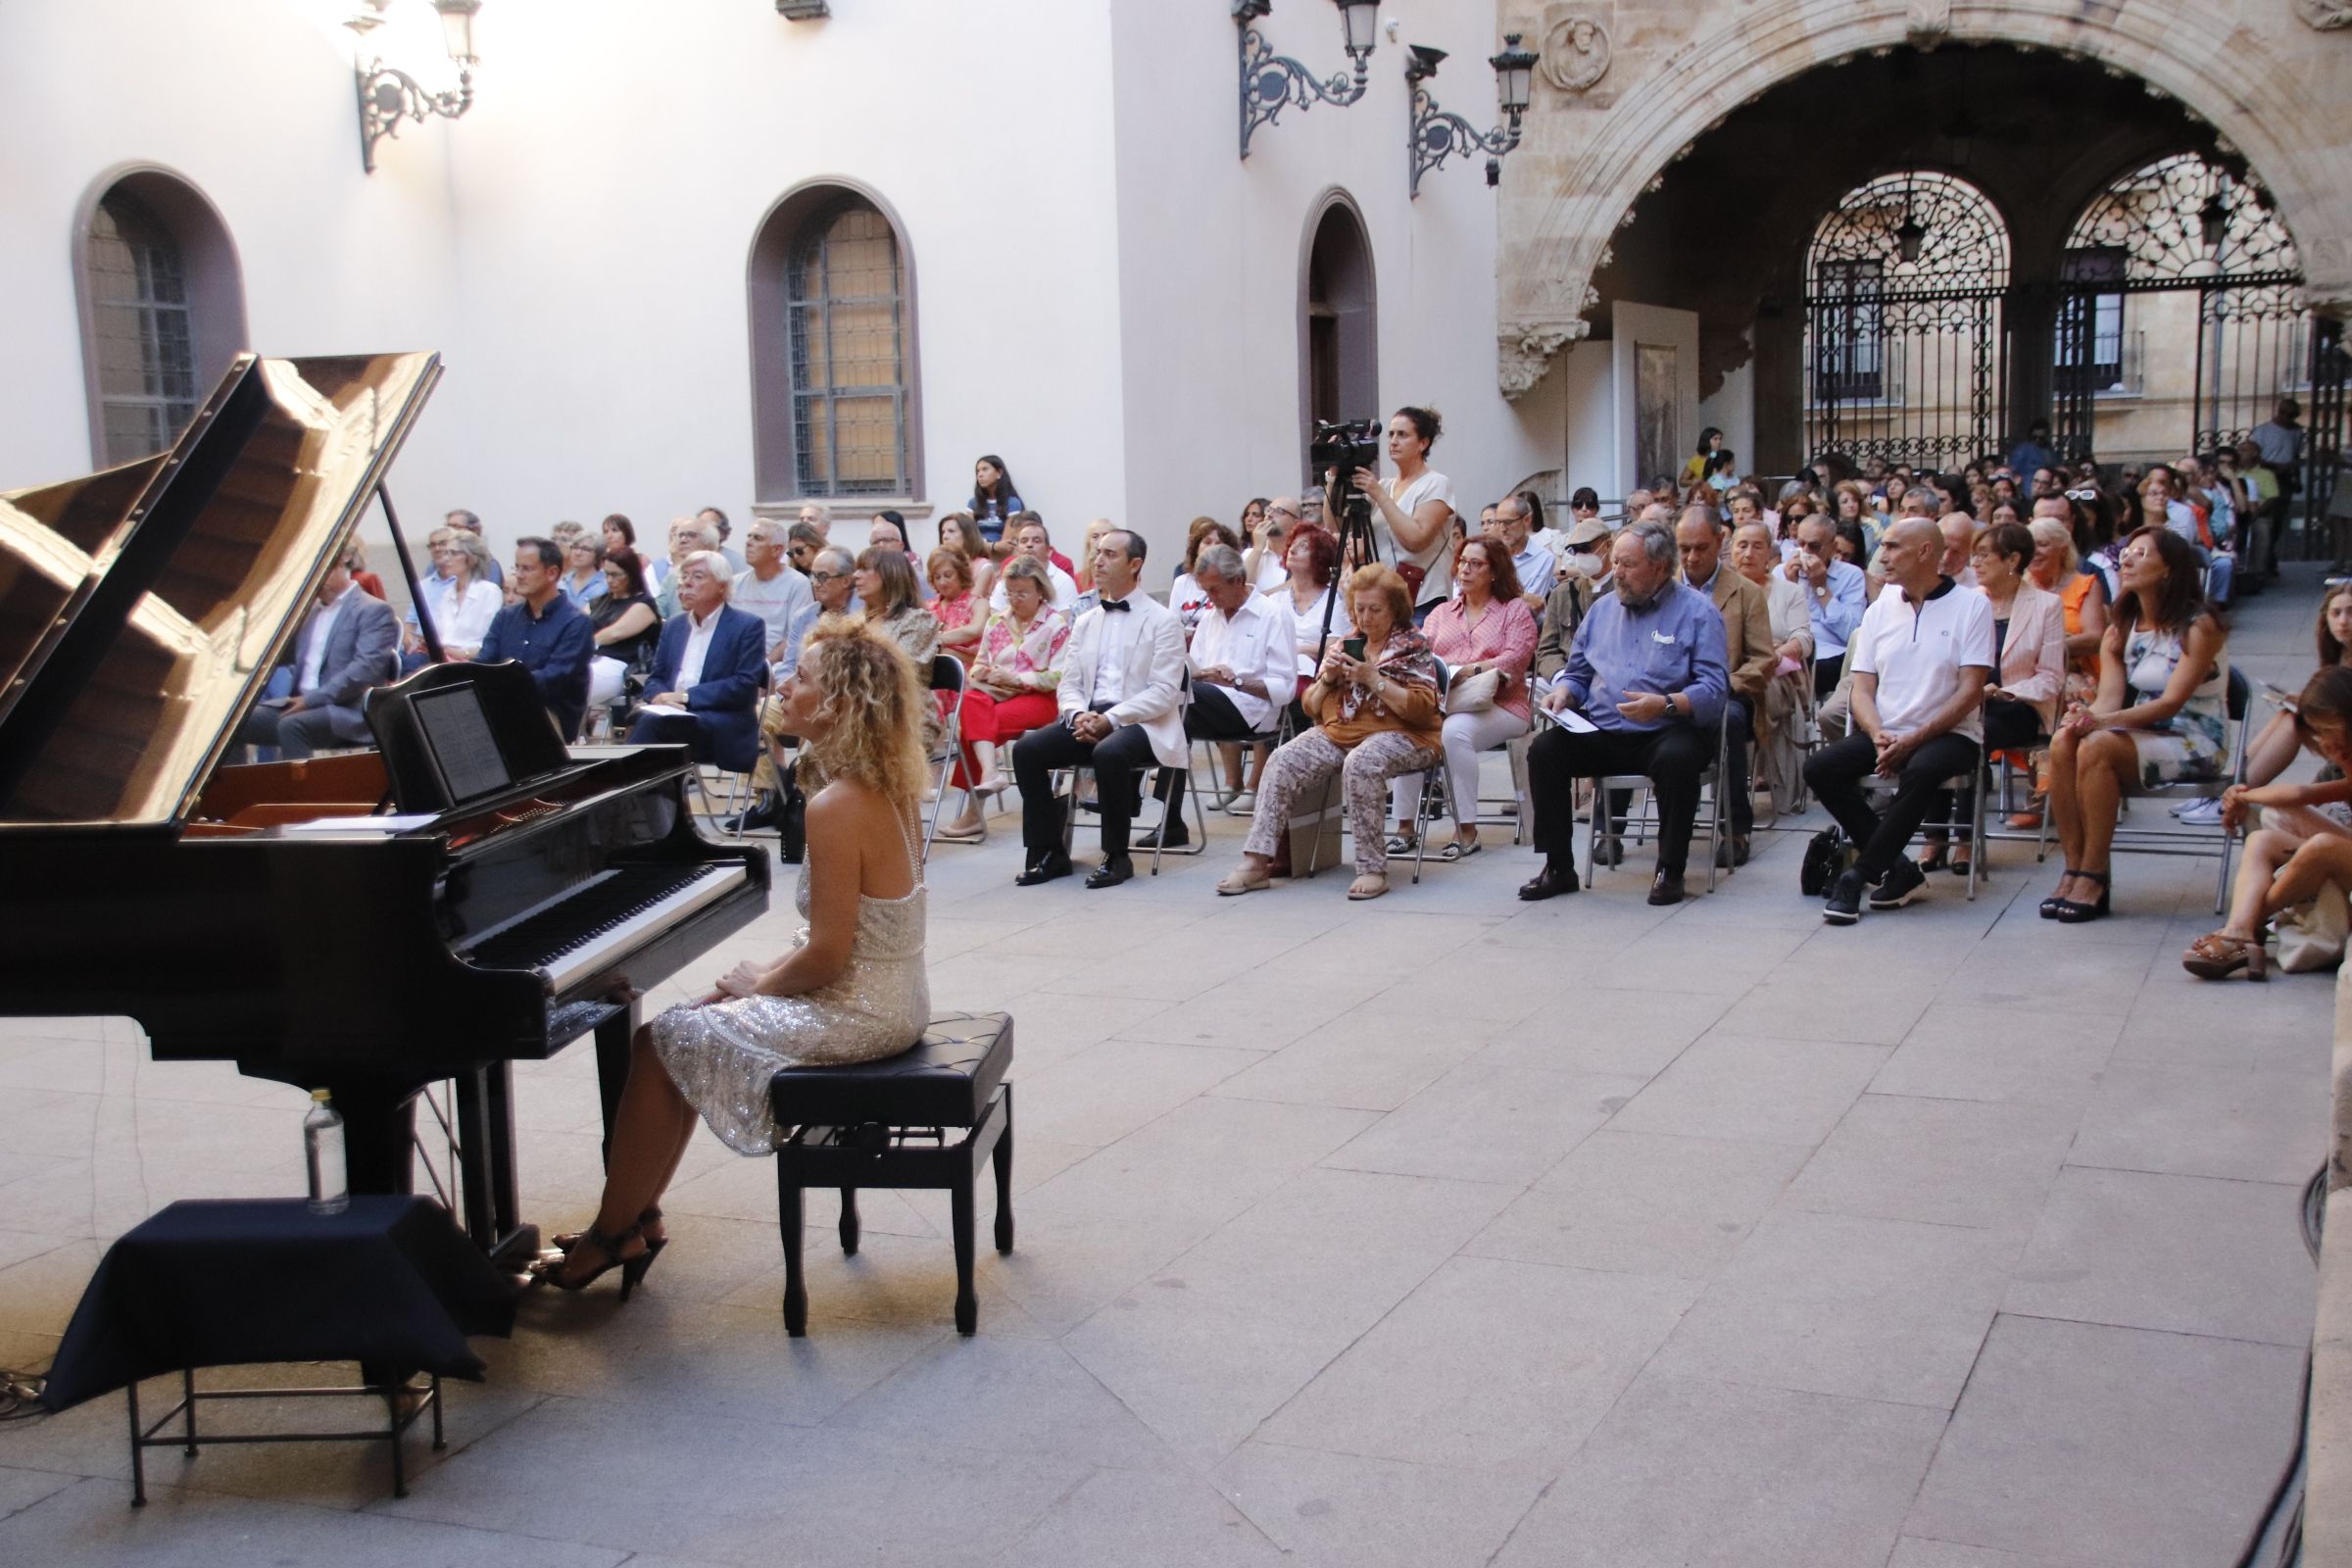 David Mingo, clausura el proyecto expositivo “Mar de Encinas” y asiste al concierto de clausura que ofrecerá la pianista María Guerras.